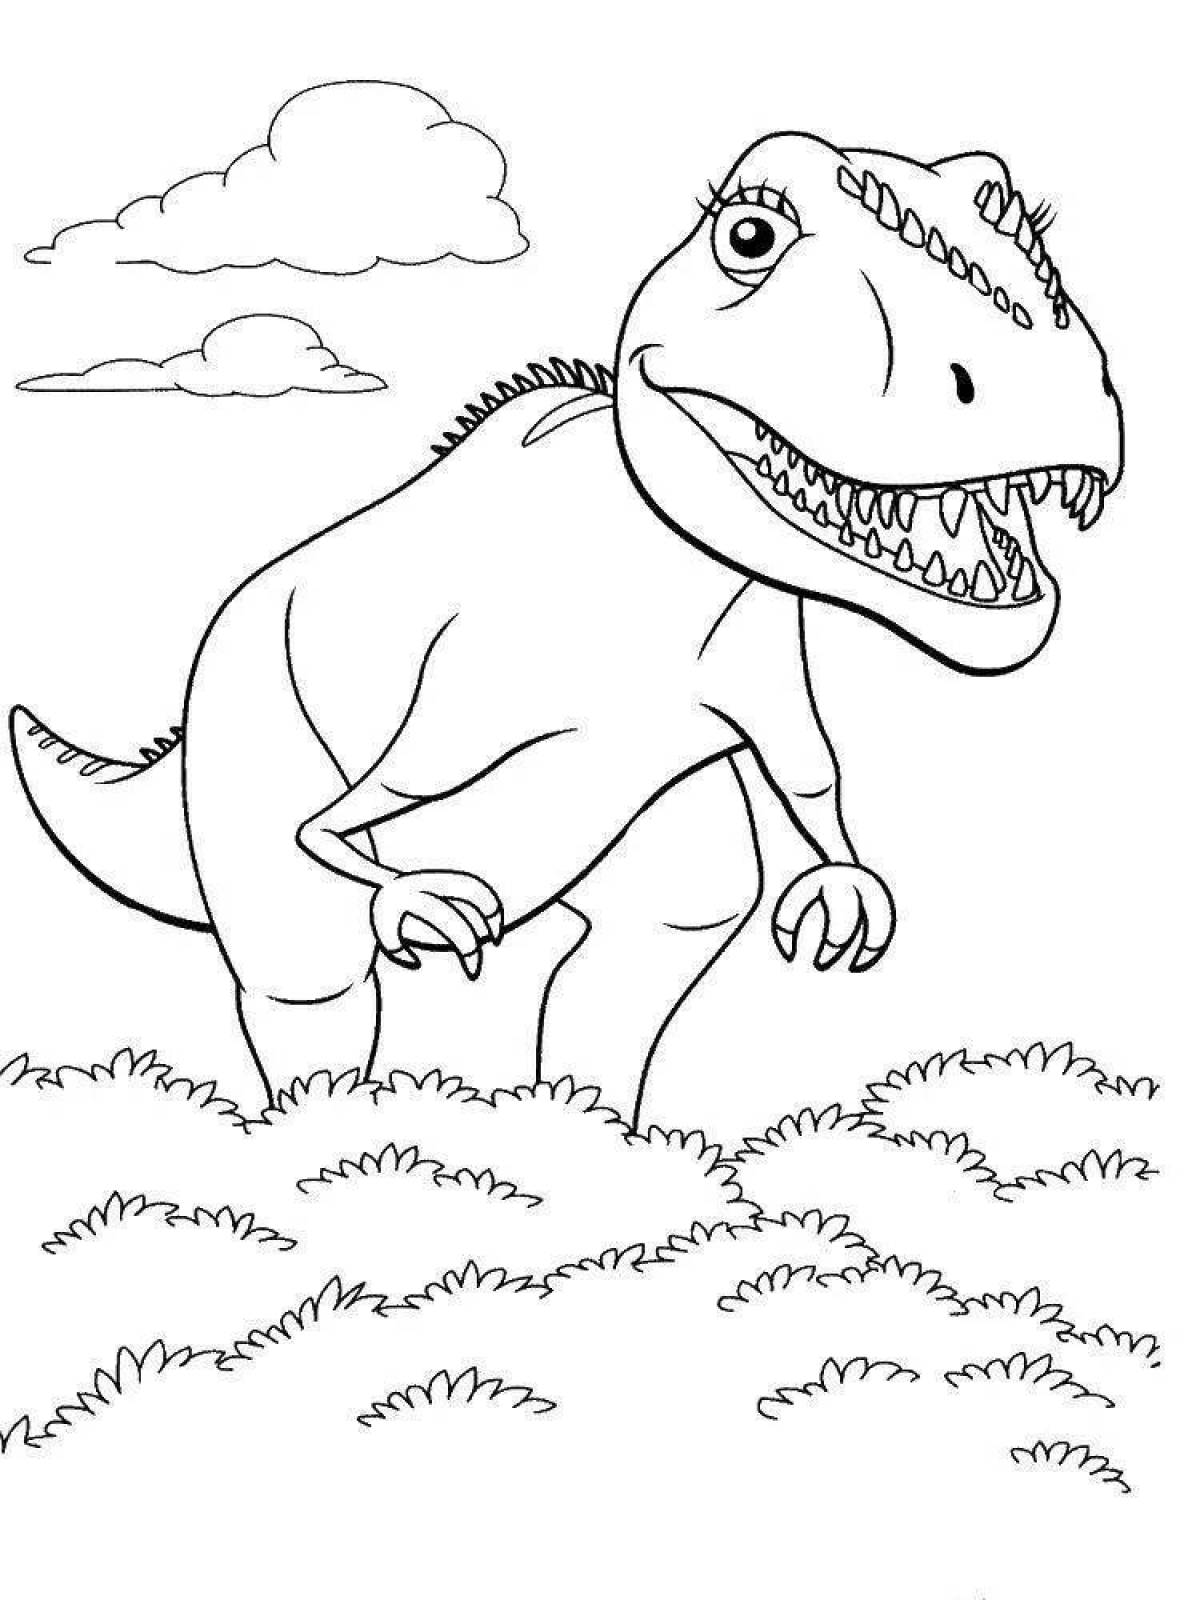 Раскраски динозавры формат а4. Поезд динозавров Тираннозавр раскраска. Тарбозавр раскраска динозавра. Динозавры / раскраска. Динозавр раскраска для детей.